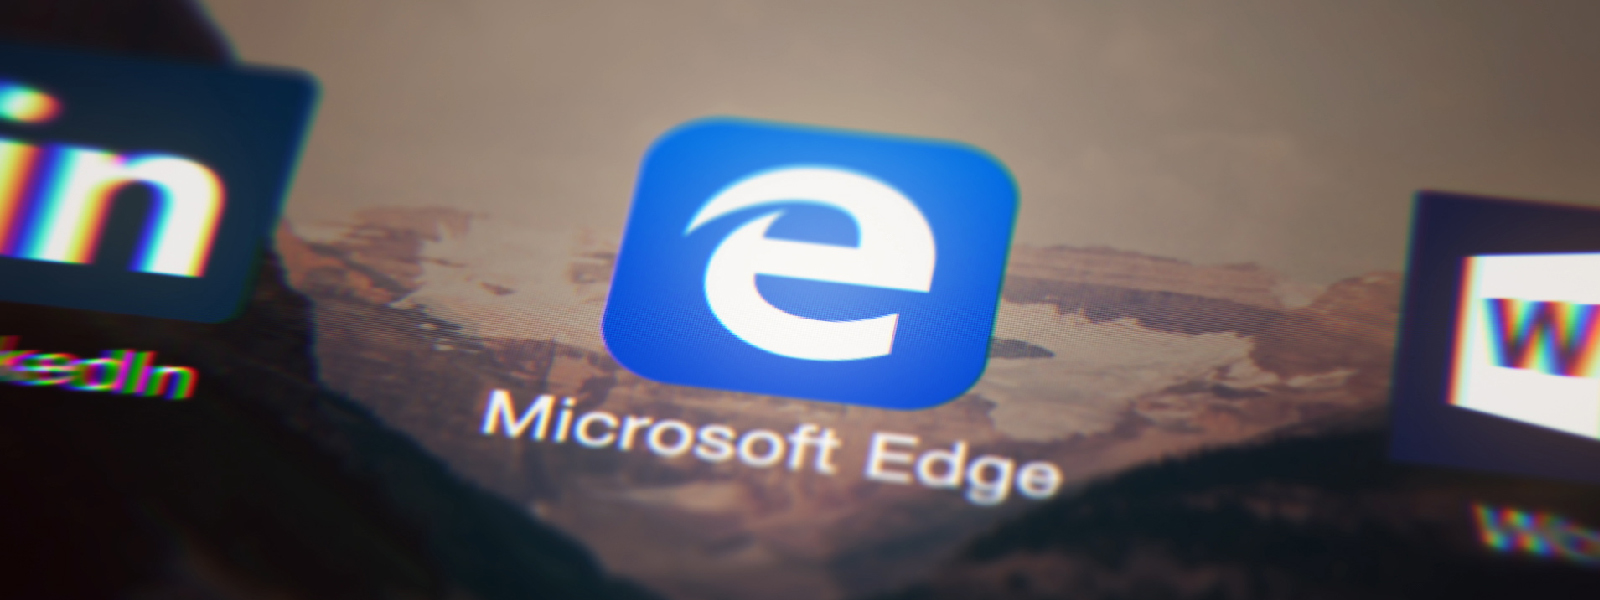 Microsoft Kini Menawarkan Pelayar Web Edge Berasaskan Chromium Dalam Bentuk Beta